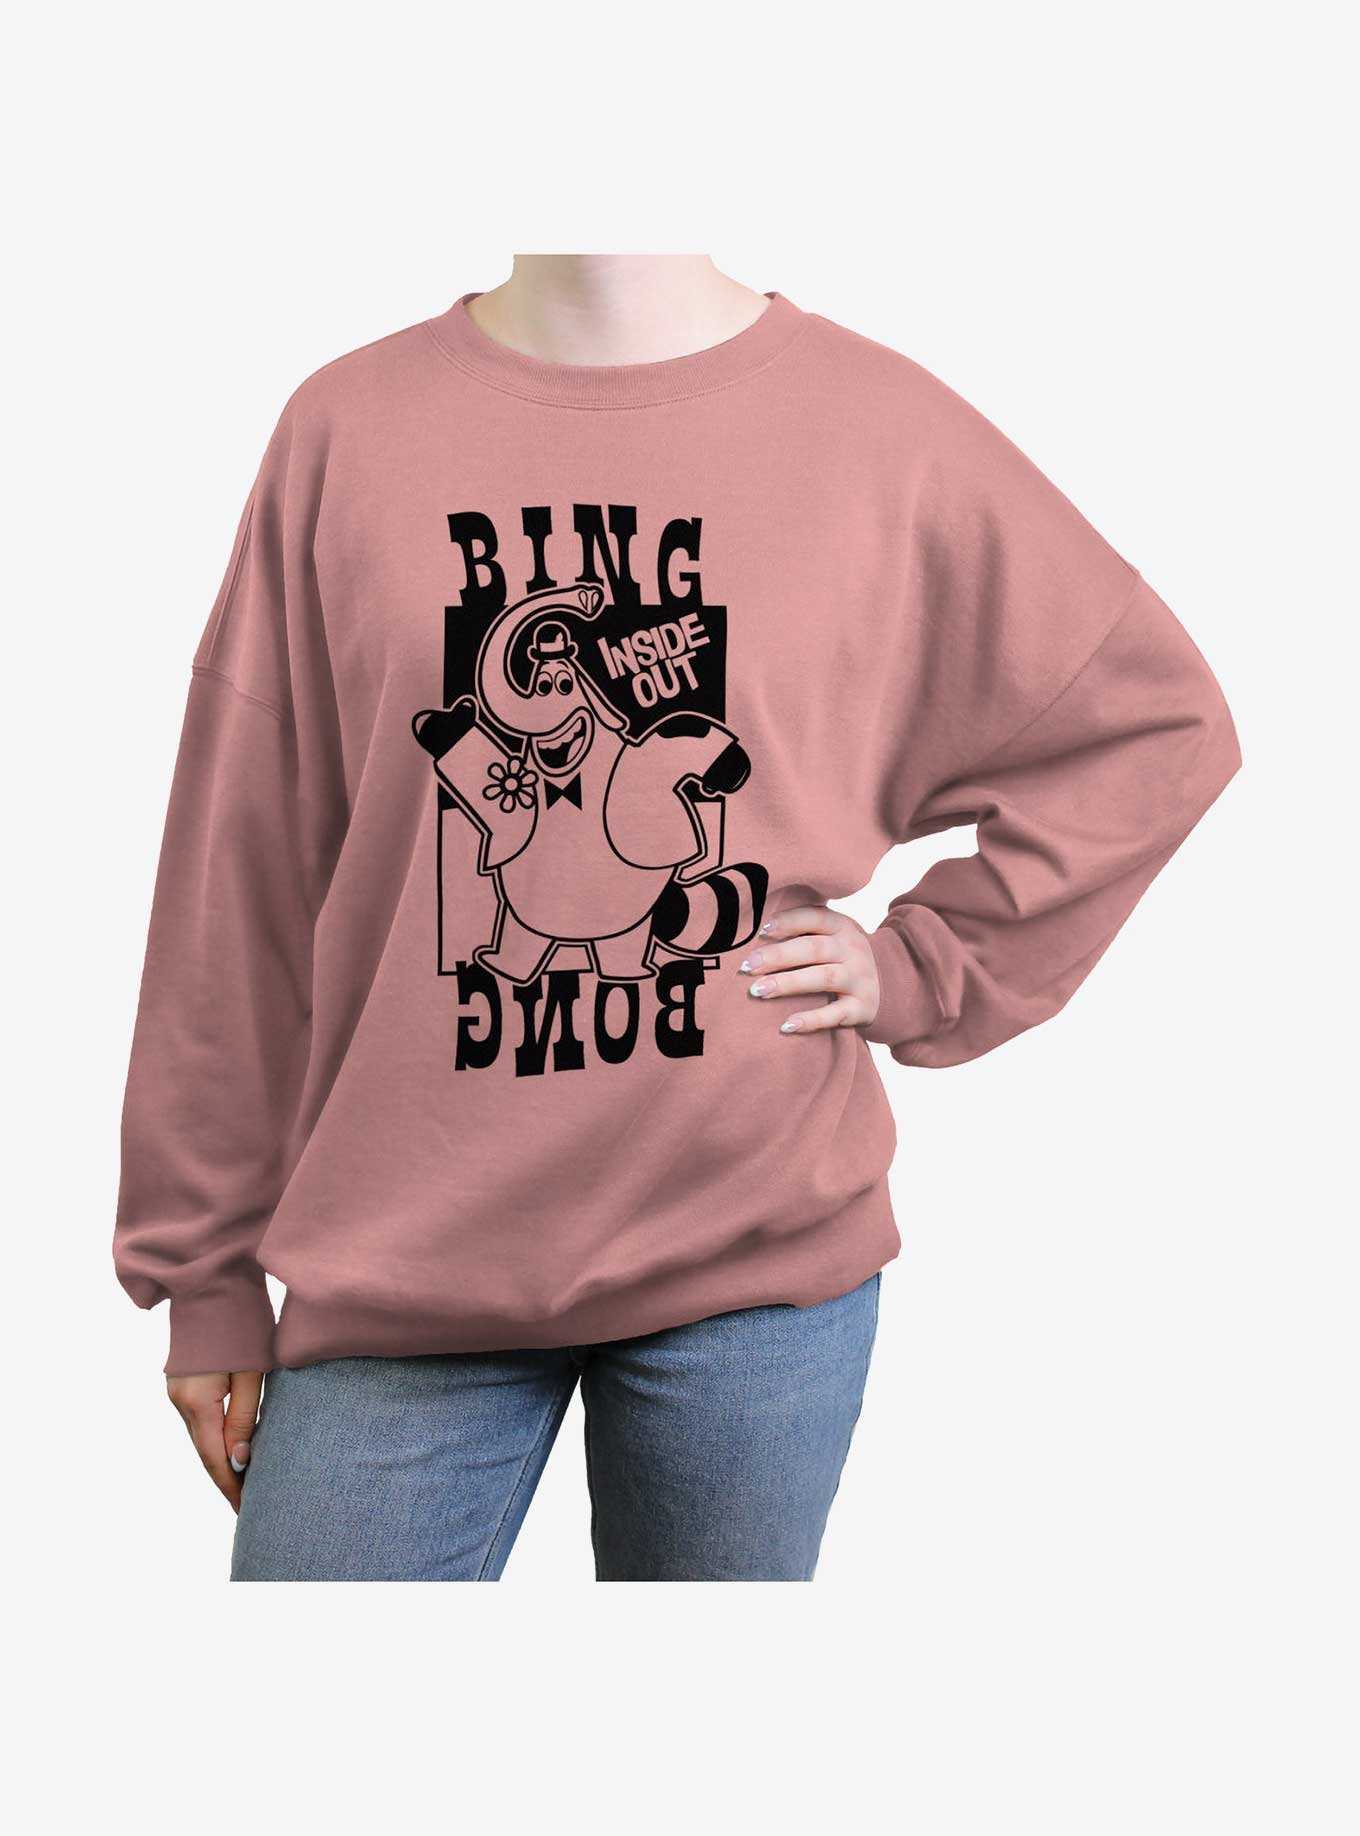 Disney Pixar Inside Out 2 Bing Bong Girls Oversized Sweatshirt, , hi-res